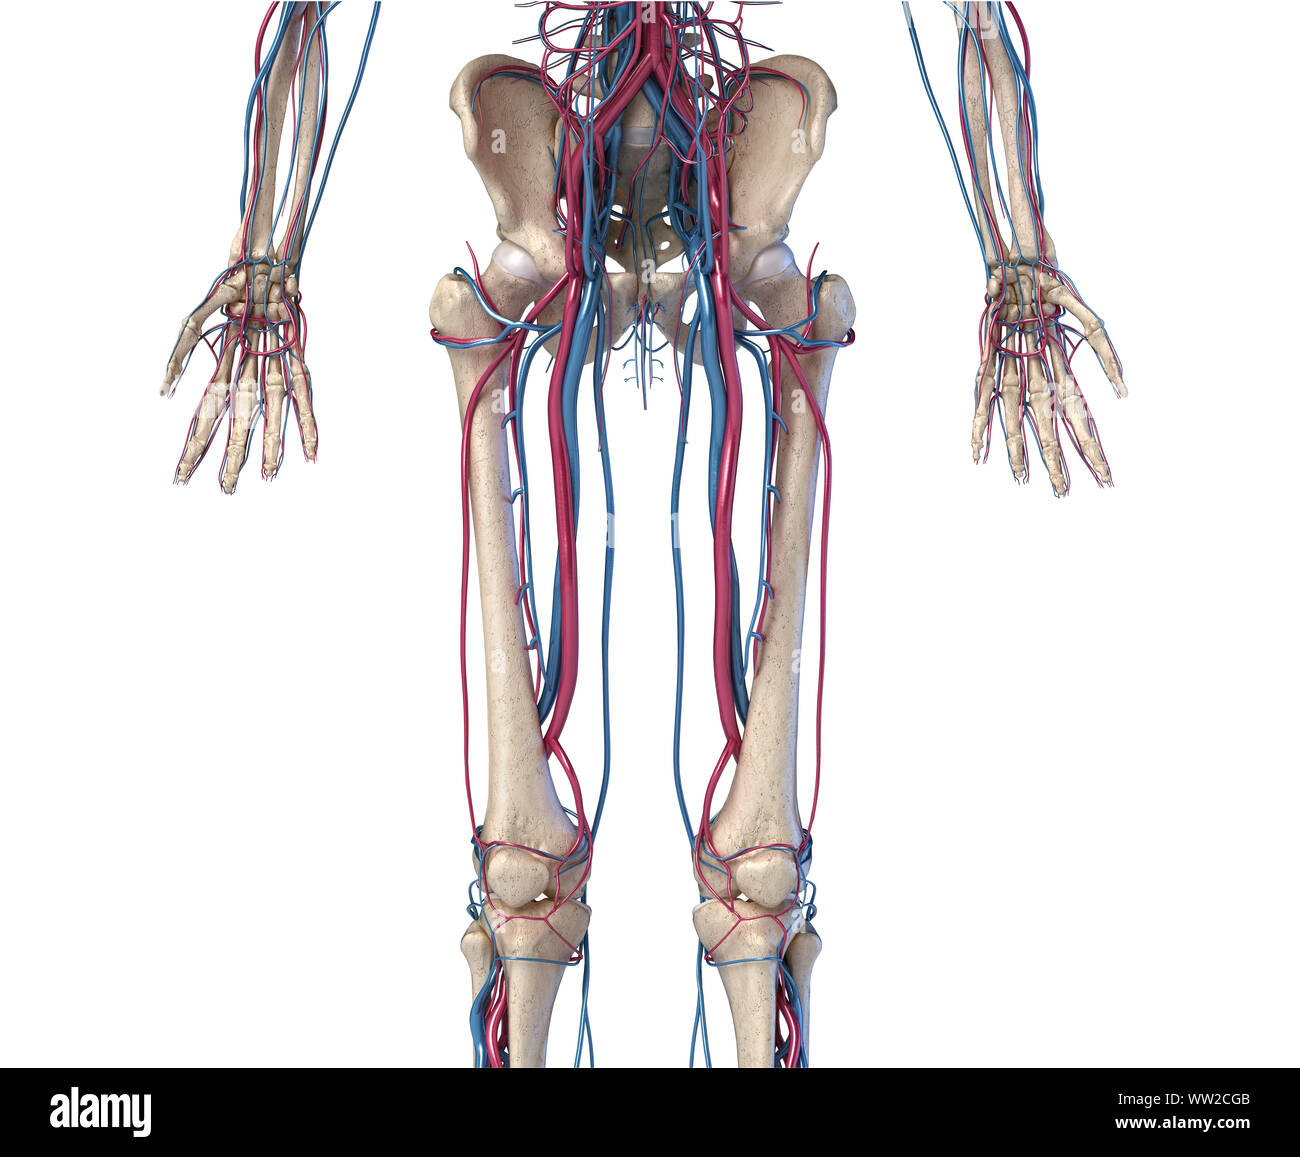 Menschliche Körper Anatomie. 3D-Darstellung der Hüfte, Beine und Hände Skelett- und Herz-Kreislauf-System. Von vorne betrachtet. Auf weissem Hintergrund. Stockfoto